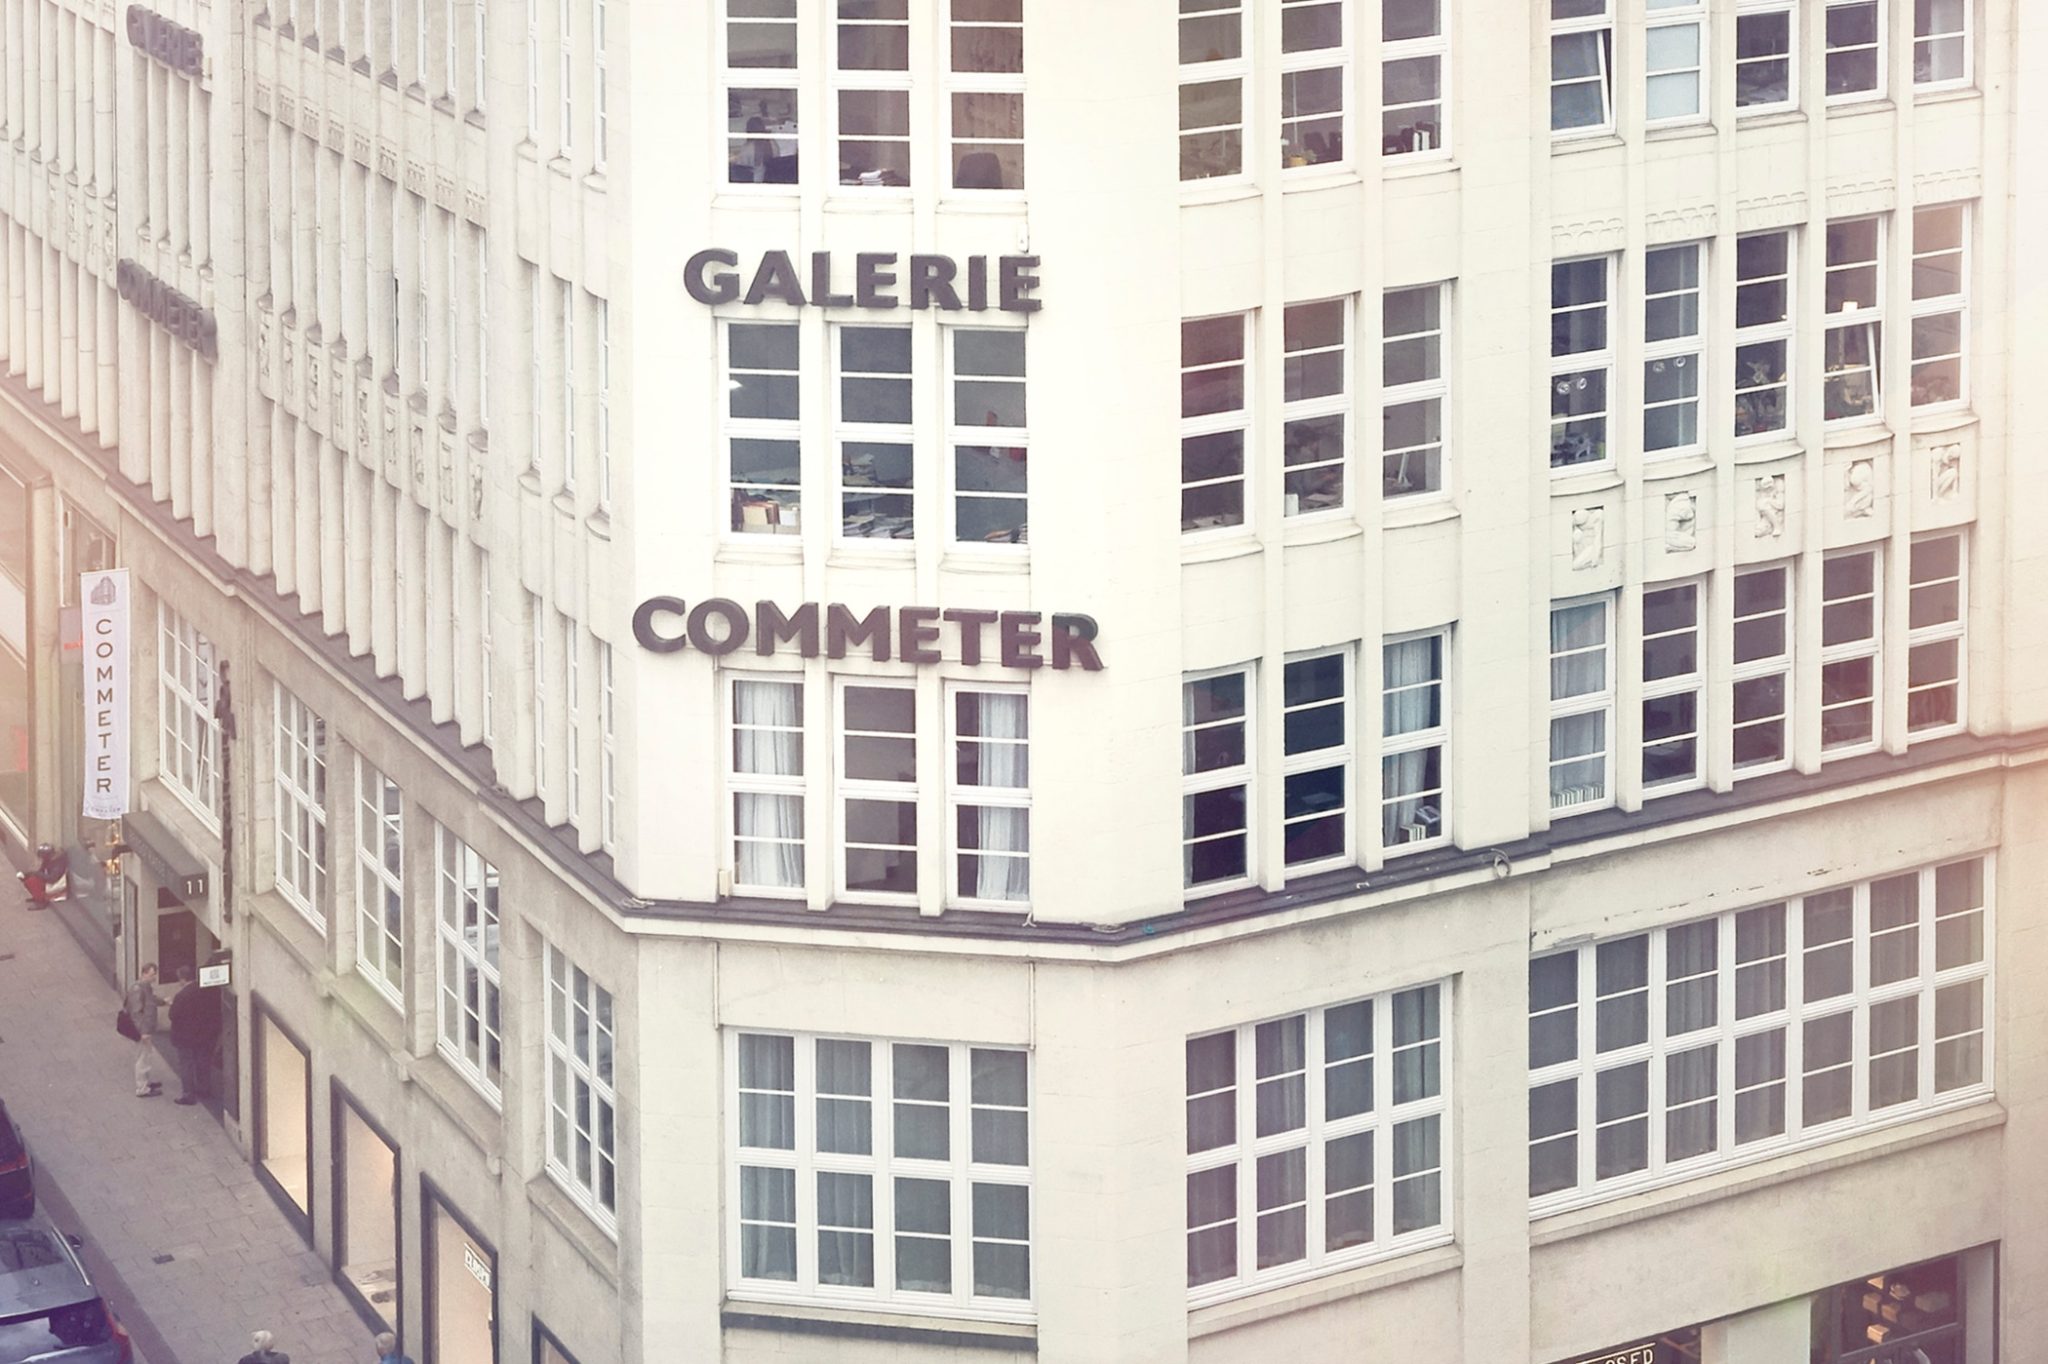 Patek-Philippe-Boutique-Hamburg-Wempe-Galerie-Commeter-Exterior